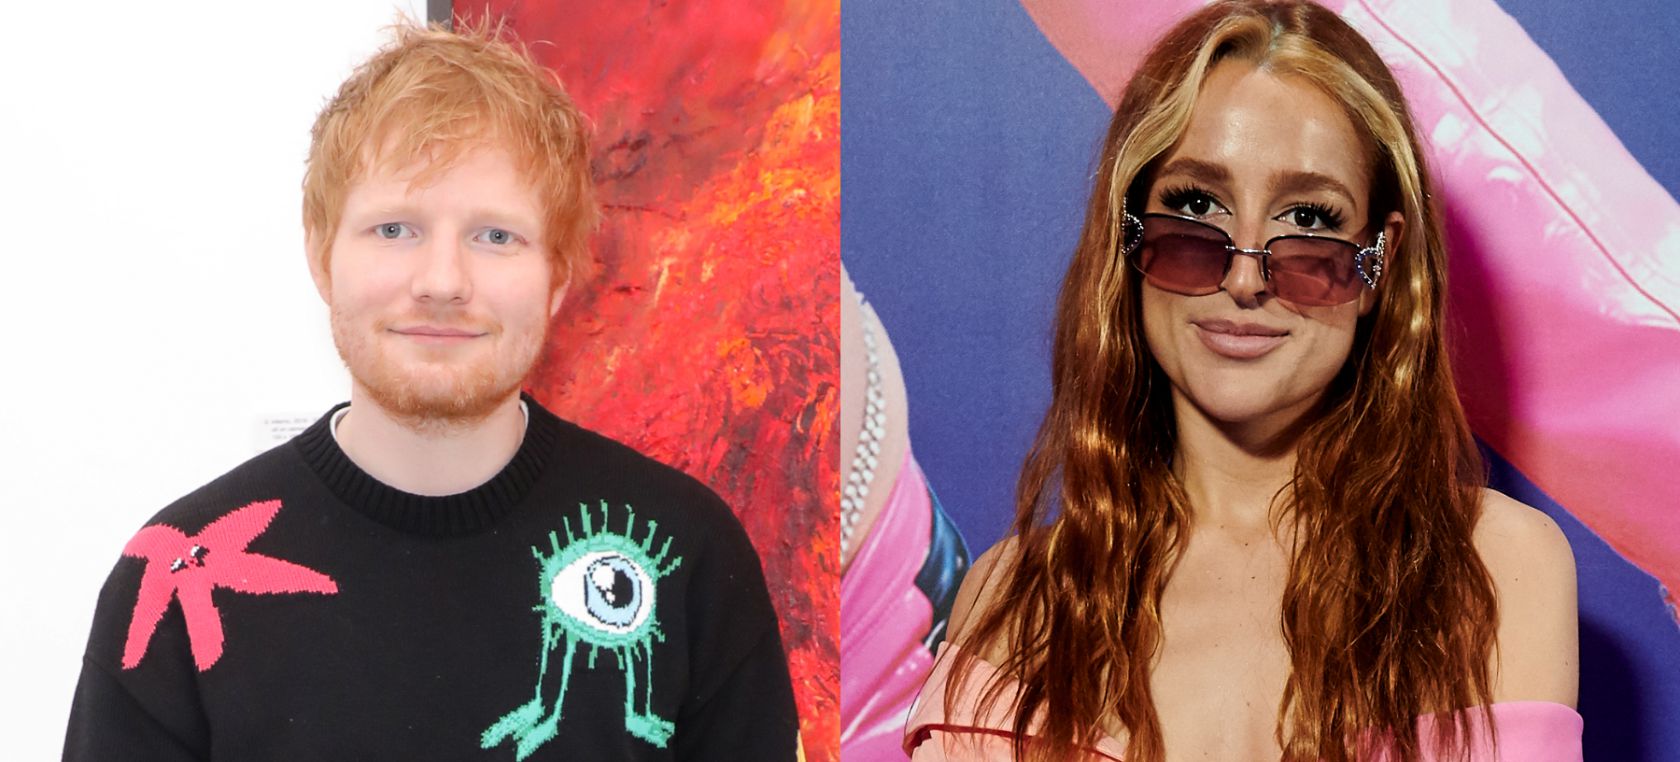 De Ed Sheeran a Belén Aguilera: 6 artistas con inicios duros que acabaron triunfando